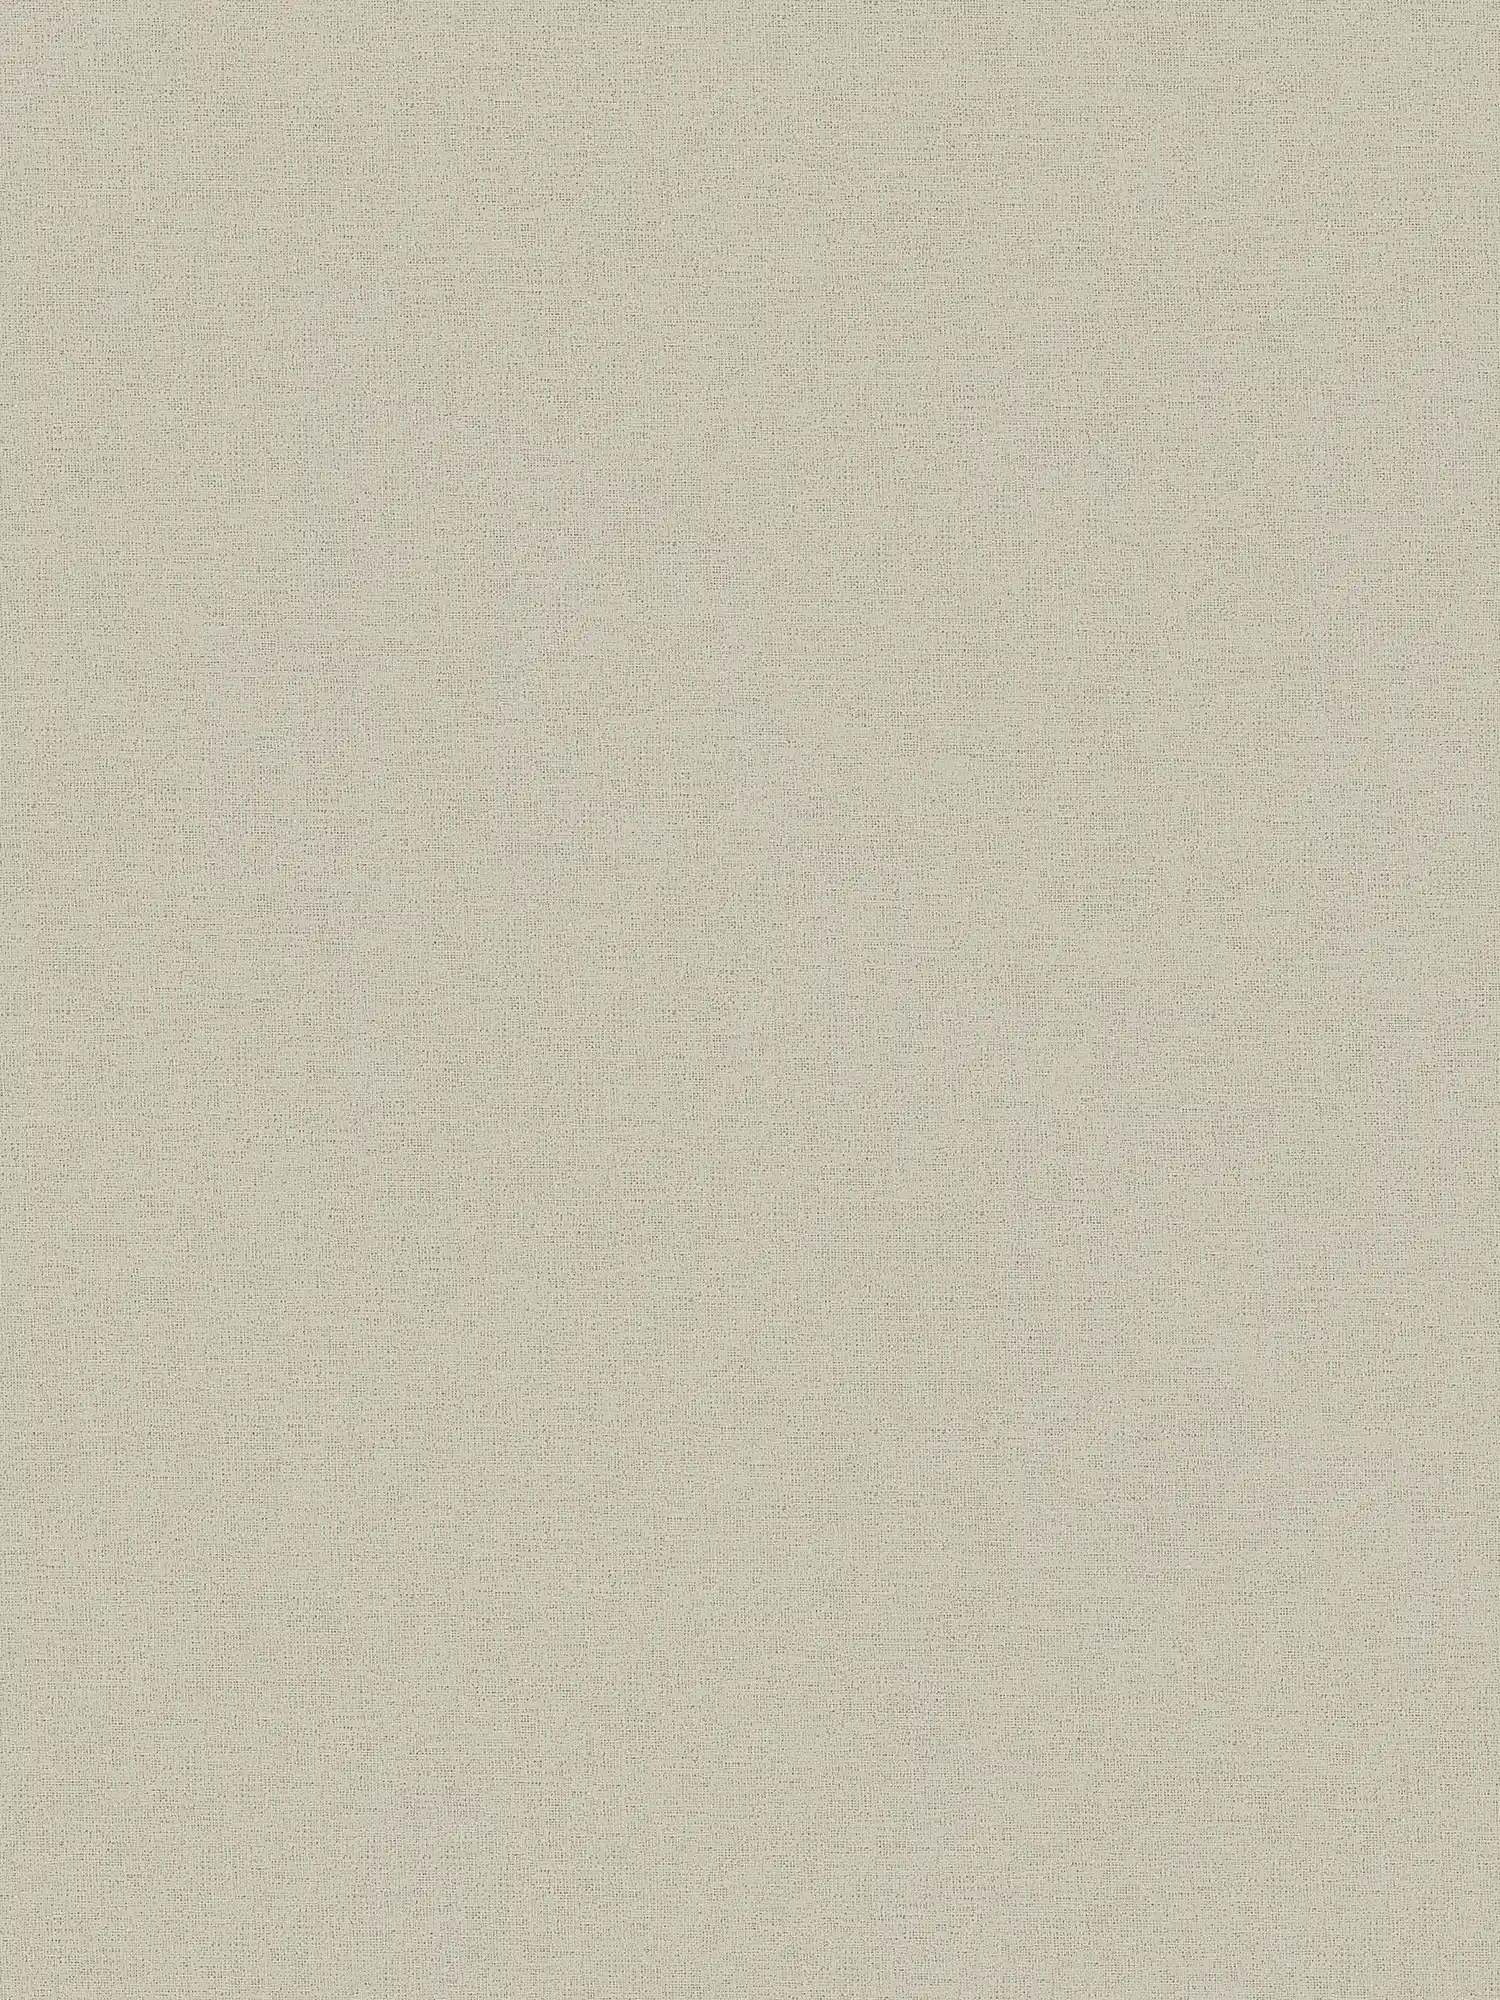 Carta da parati beige effetto lino con struttura tessile screziata
